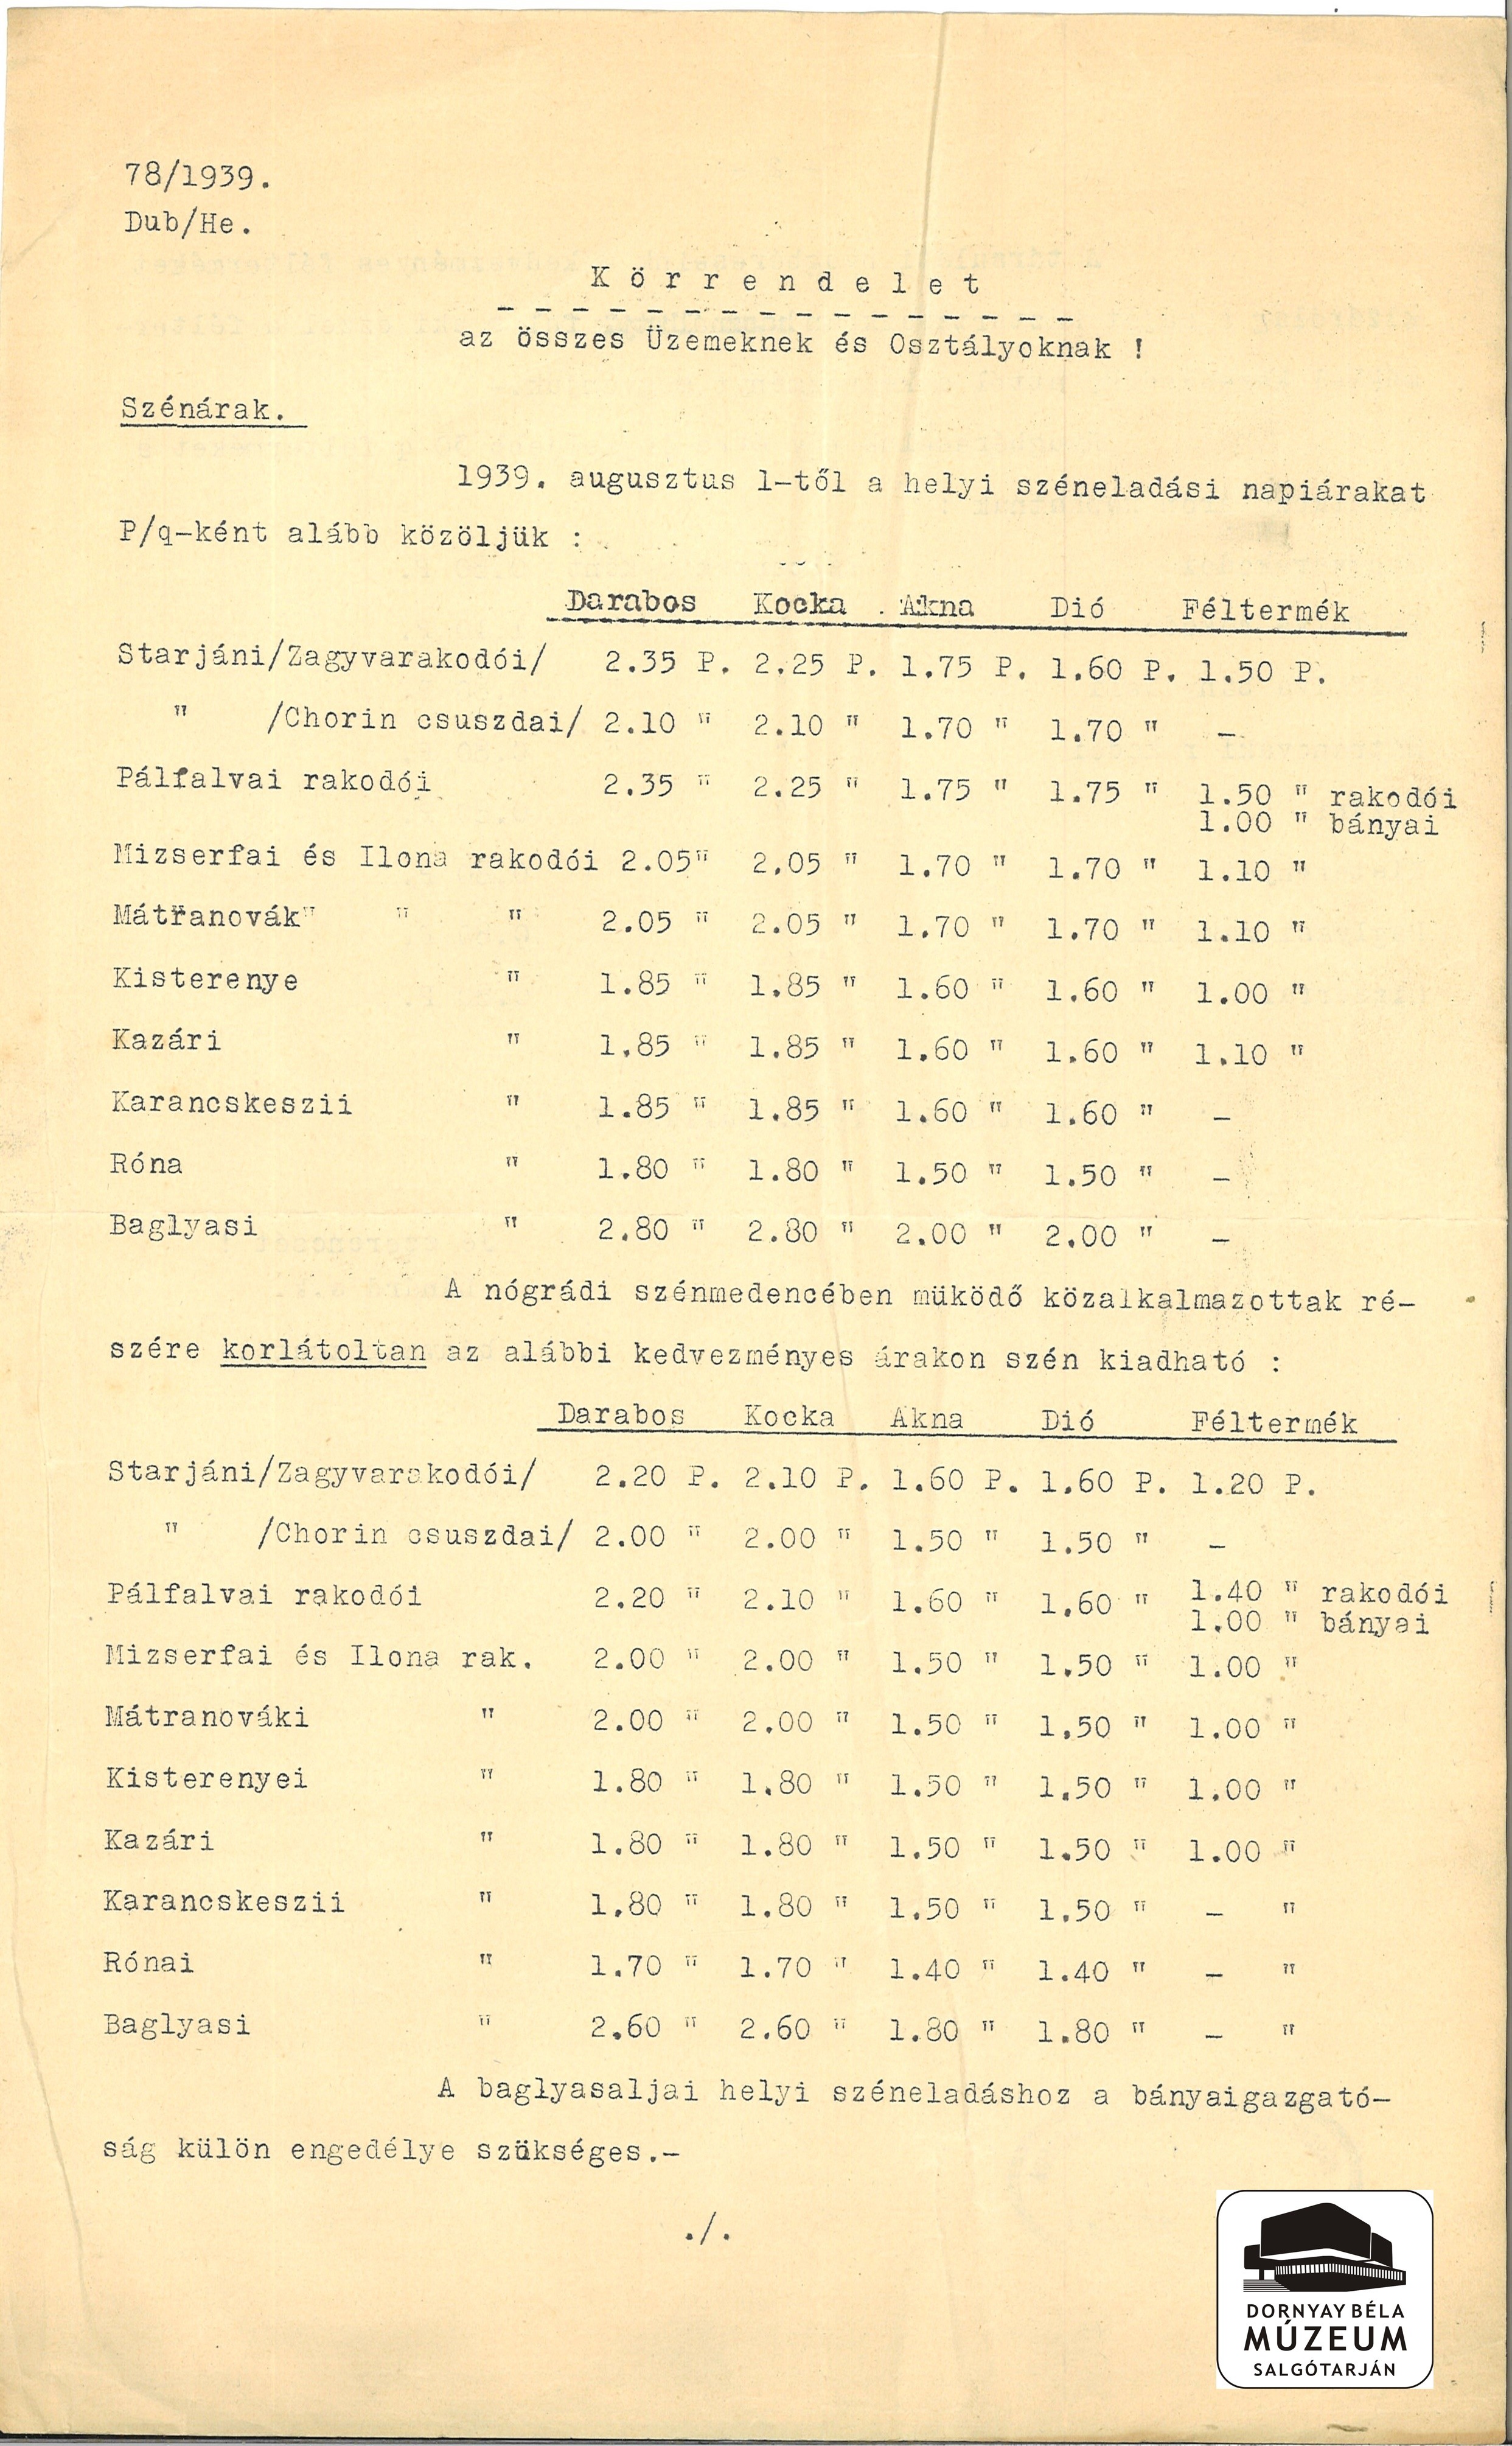 A szén árának változása 1939.VIII. 1-től (Dornyay Béla Múzeum, Salgótarján CC BY-NC-SA)